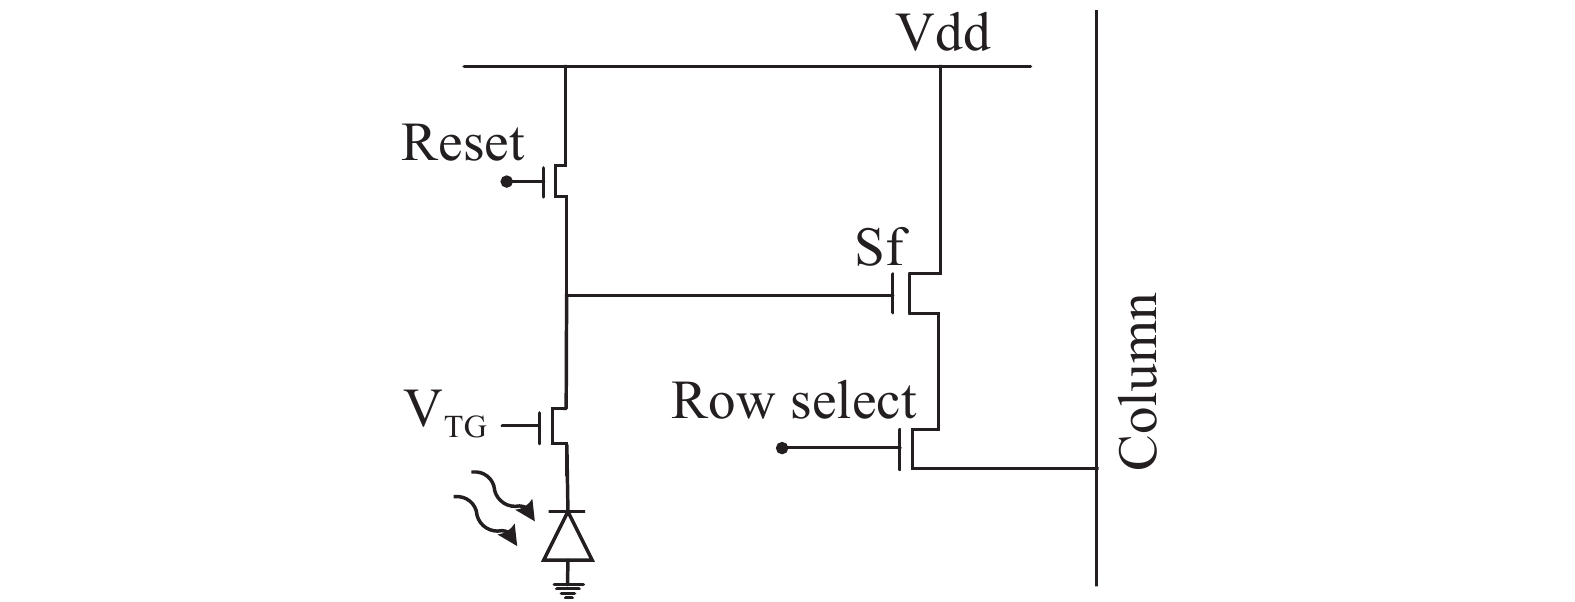 4T pixel unit schematic